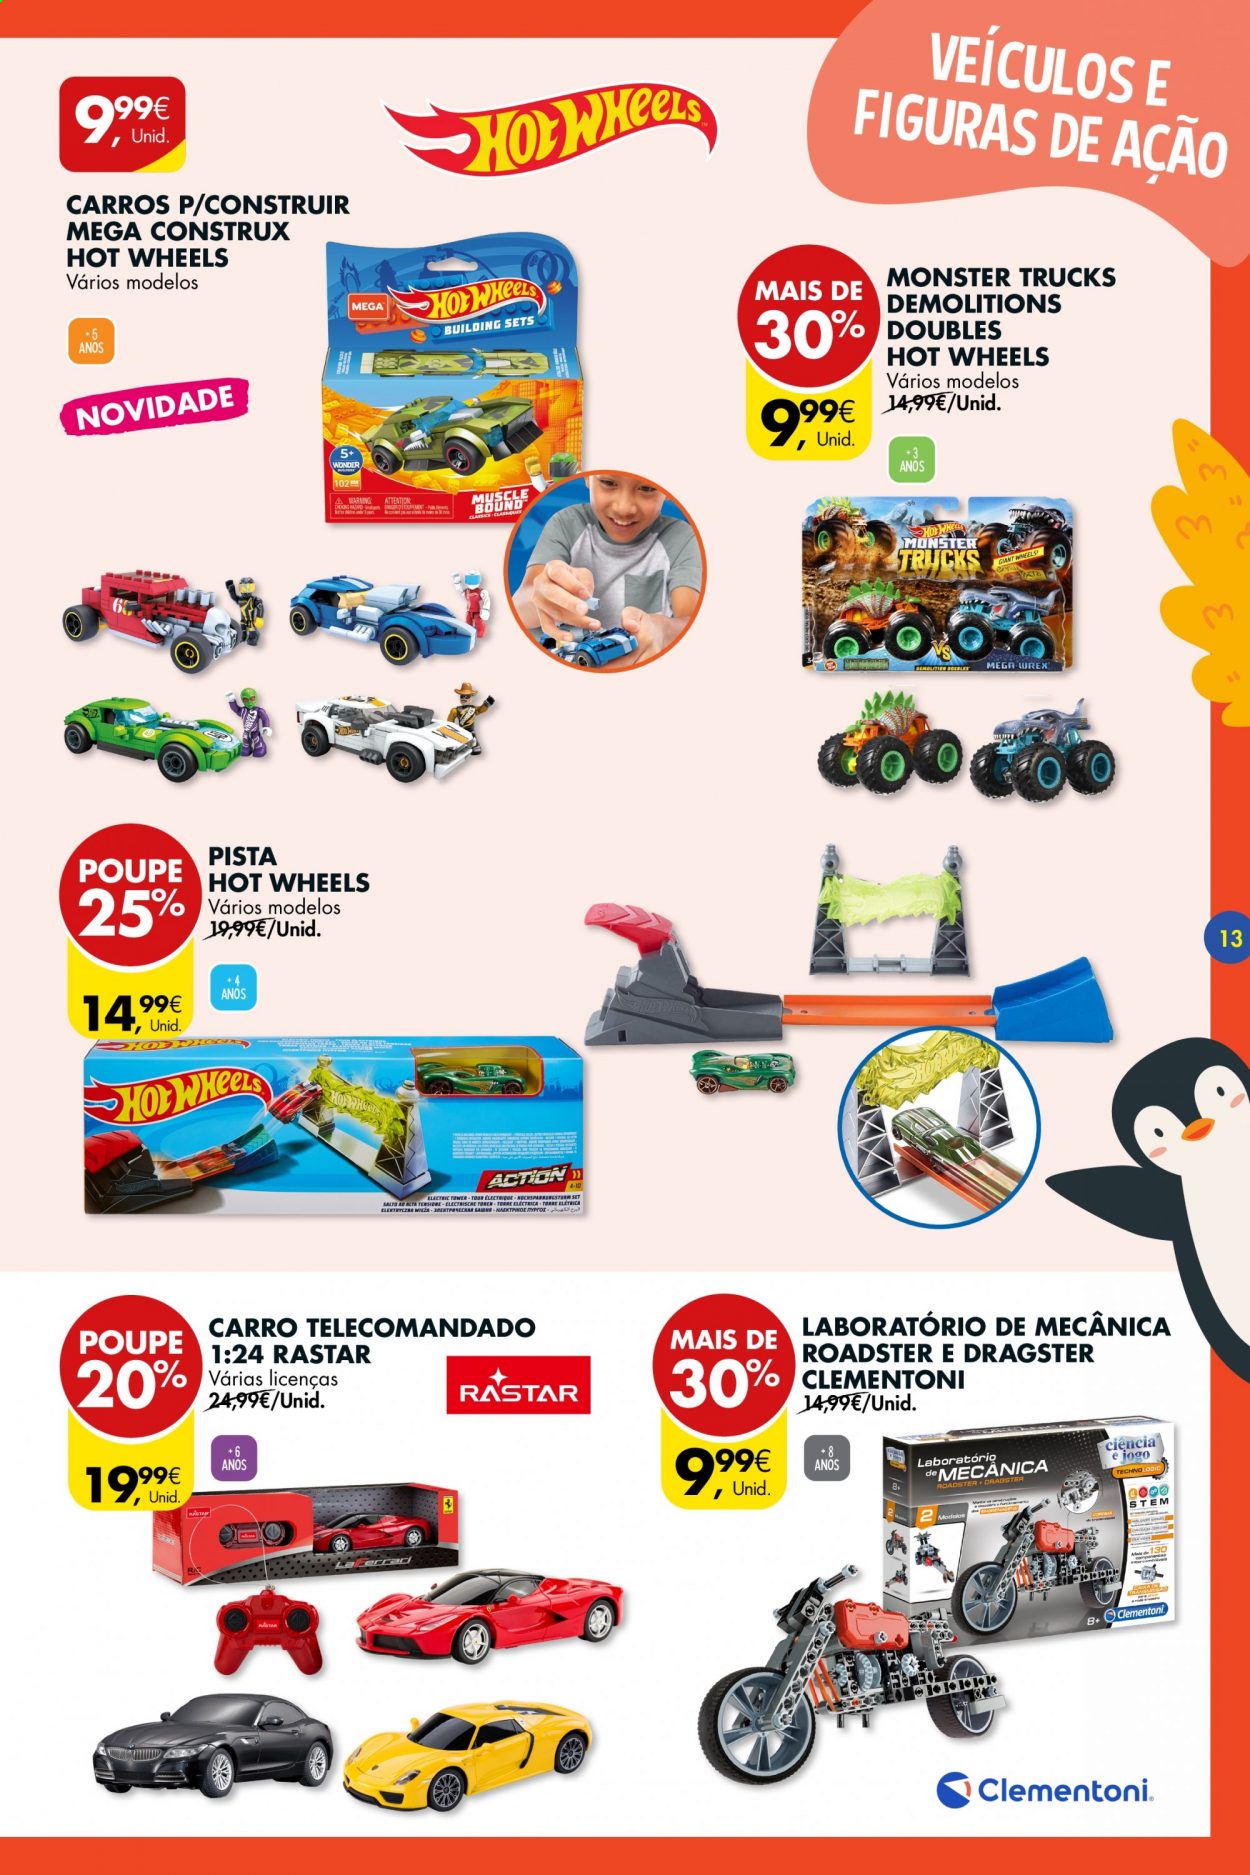 thumbnail - Folheto Pingo Doce - 11.5.2021 - 7.6.2021 - Produtos em promoção - Hot Wheels, carro brinquedo. Página 13.